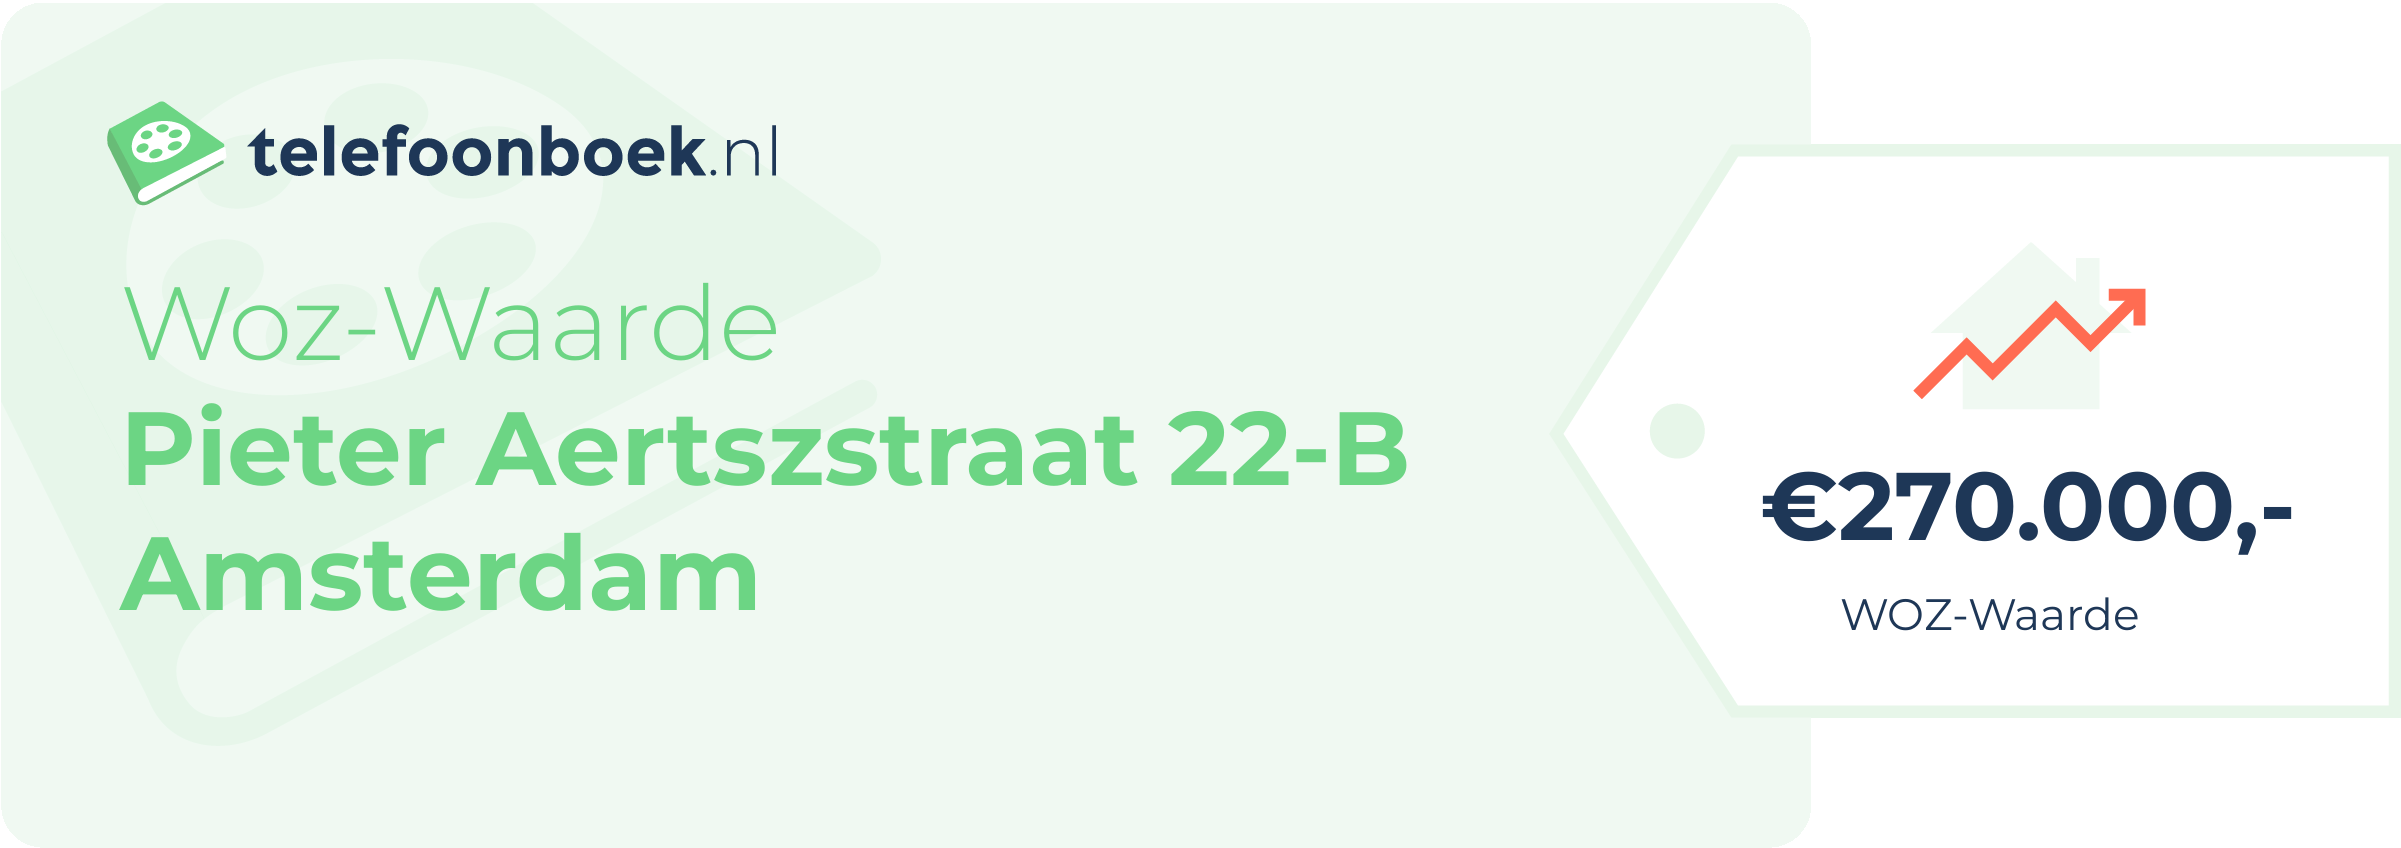 WOZ-waarde Pieter Aertszstraat 22-B Amsterdam